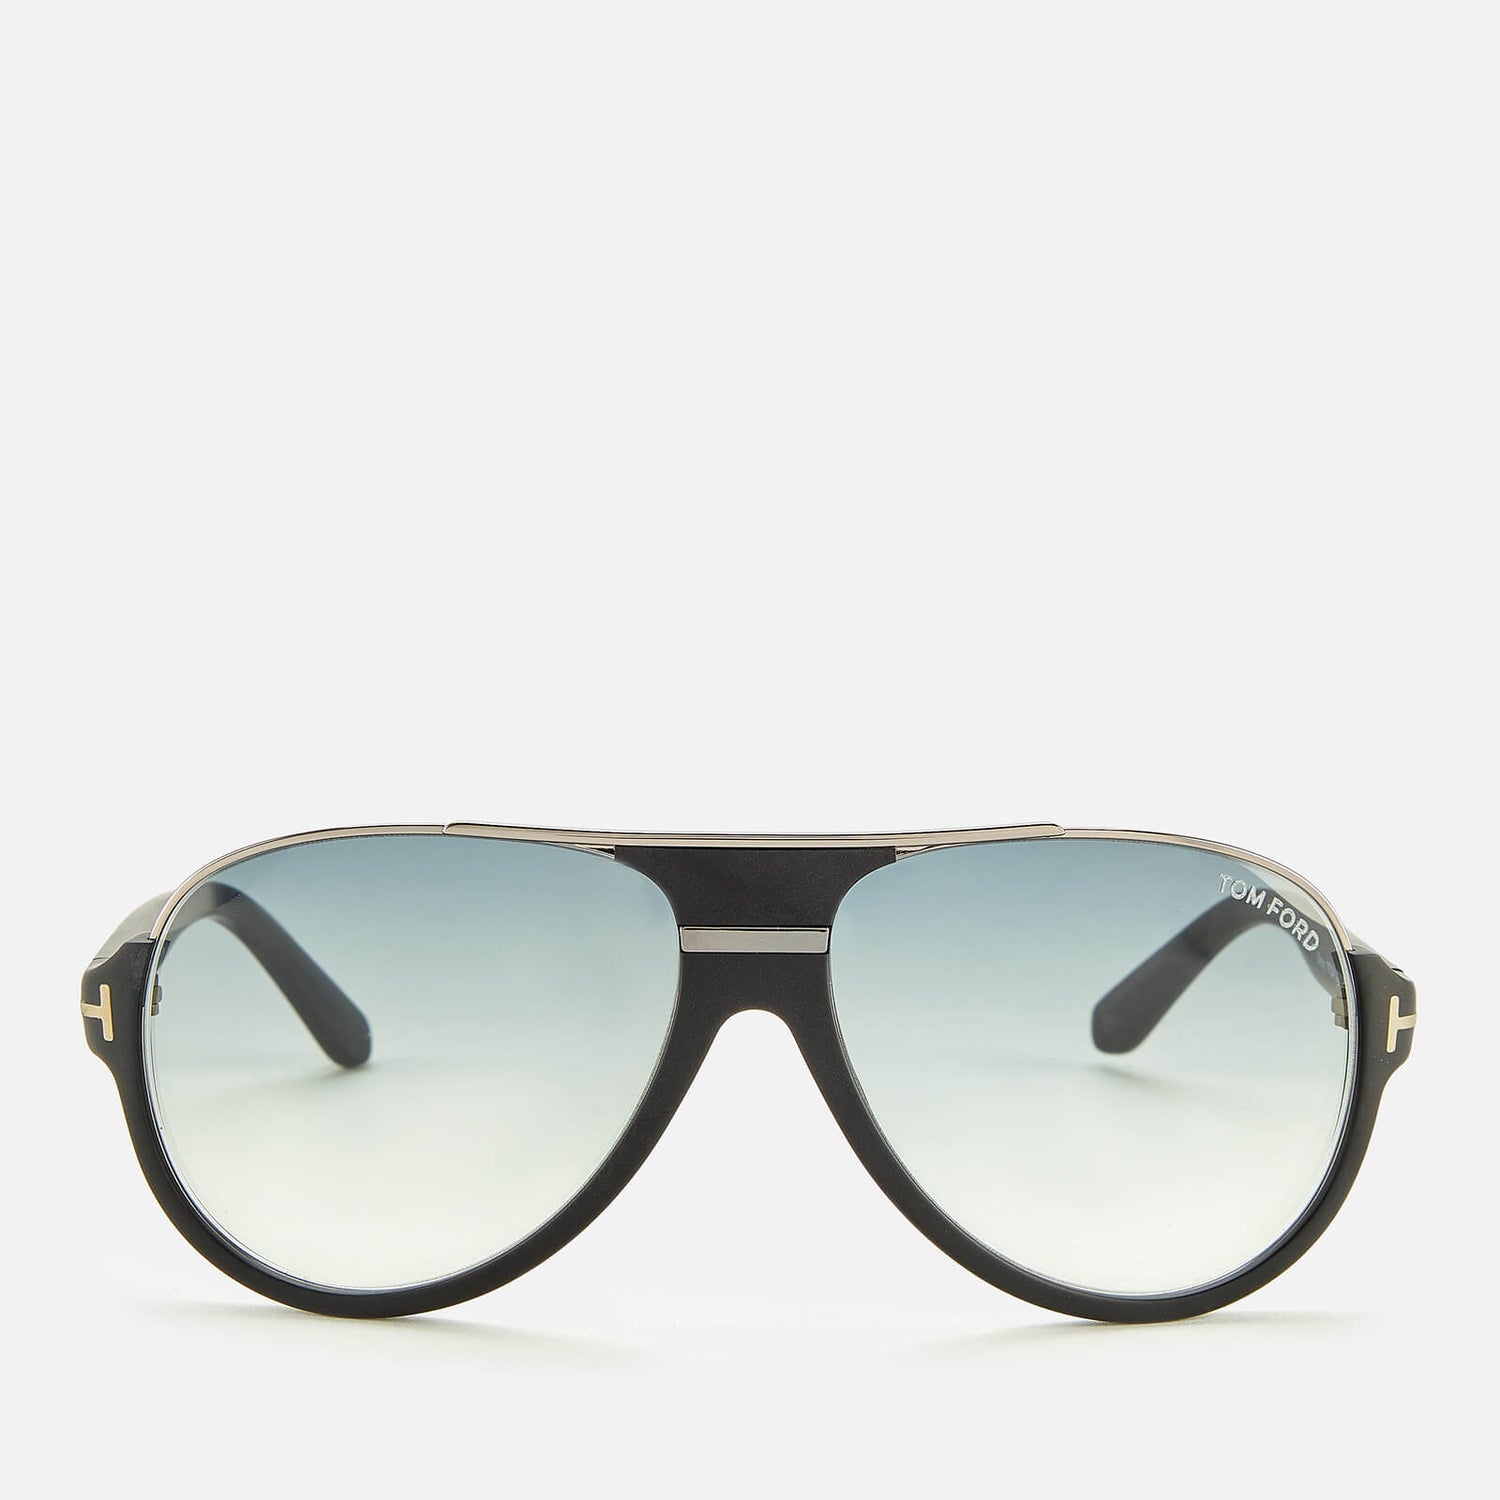 Tom Ford Men's Dimitry Sunglasses - Black